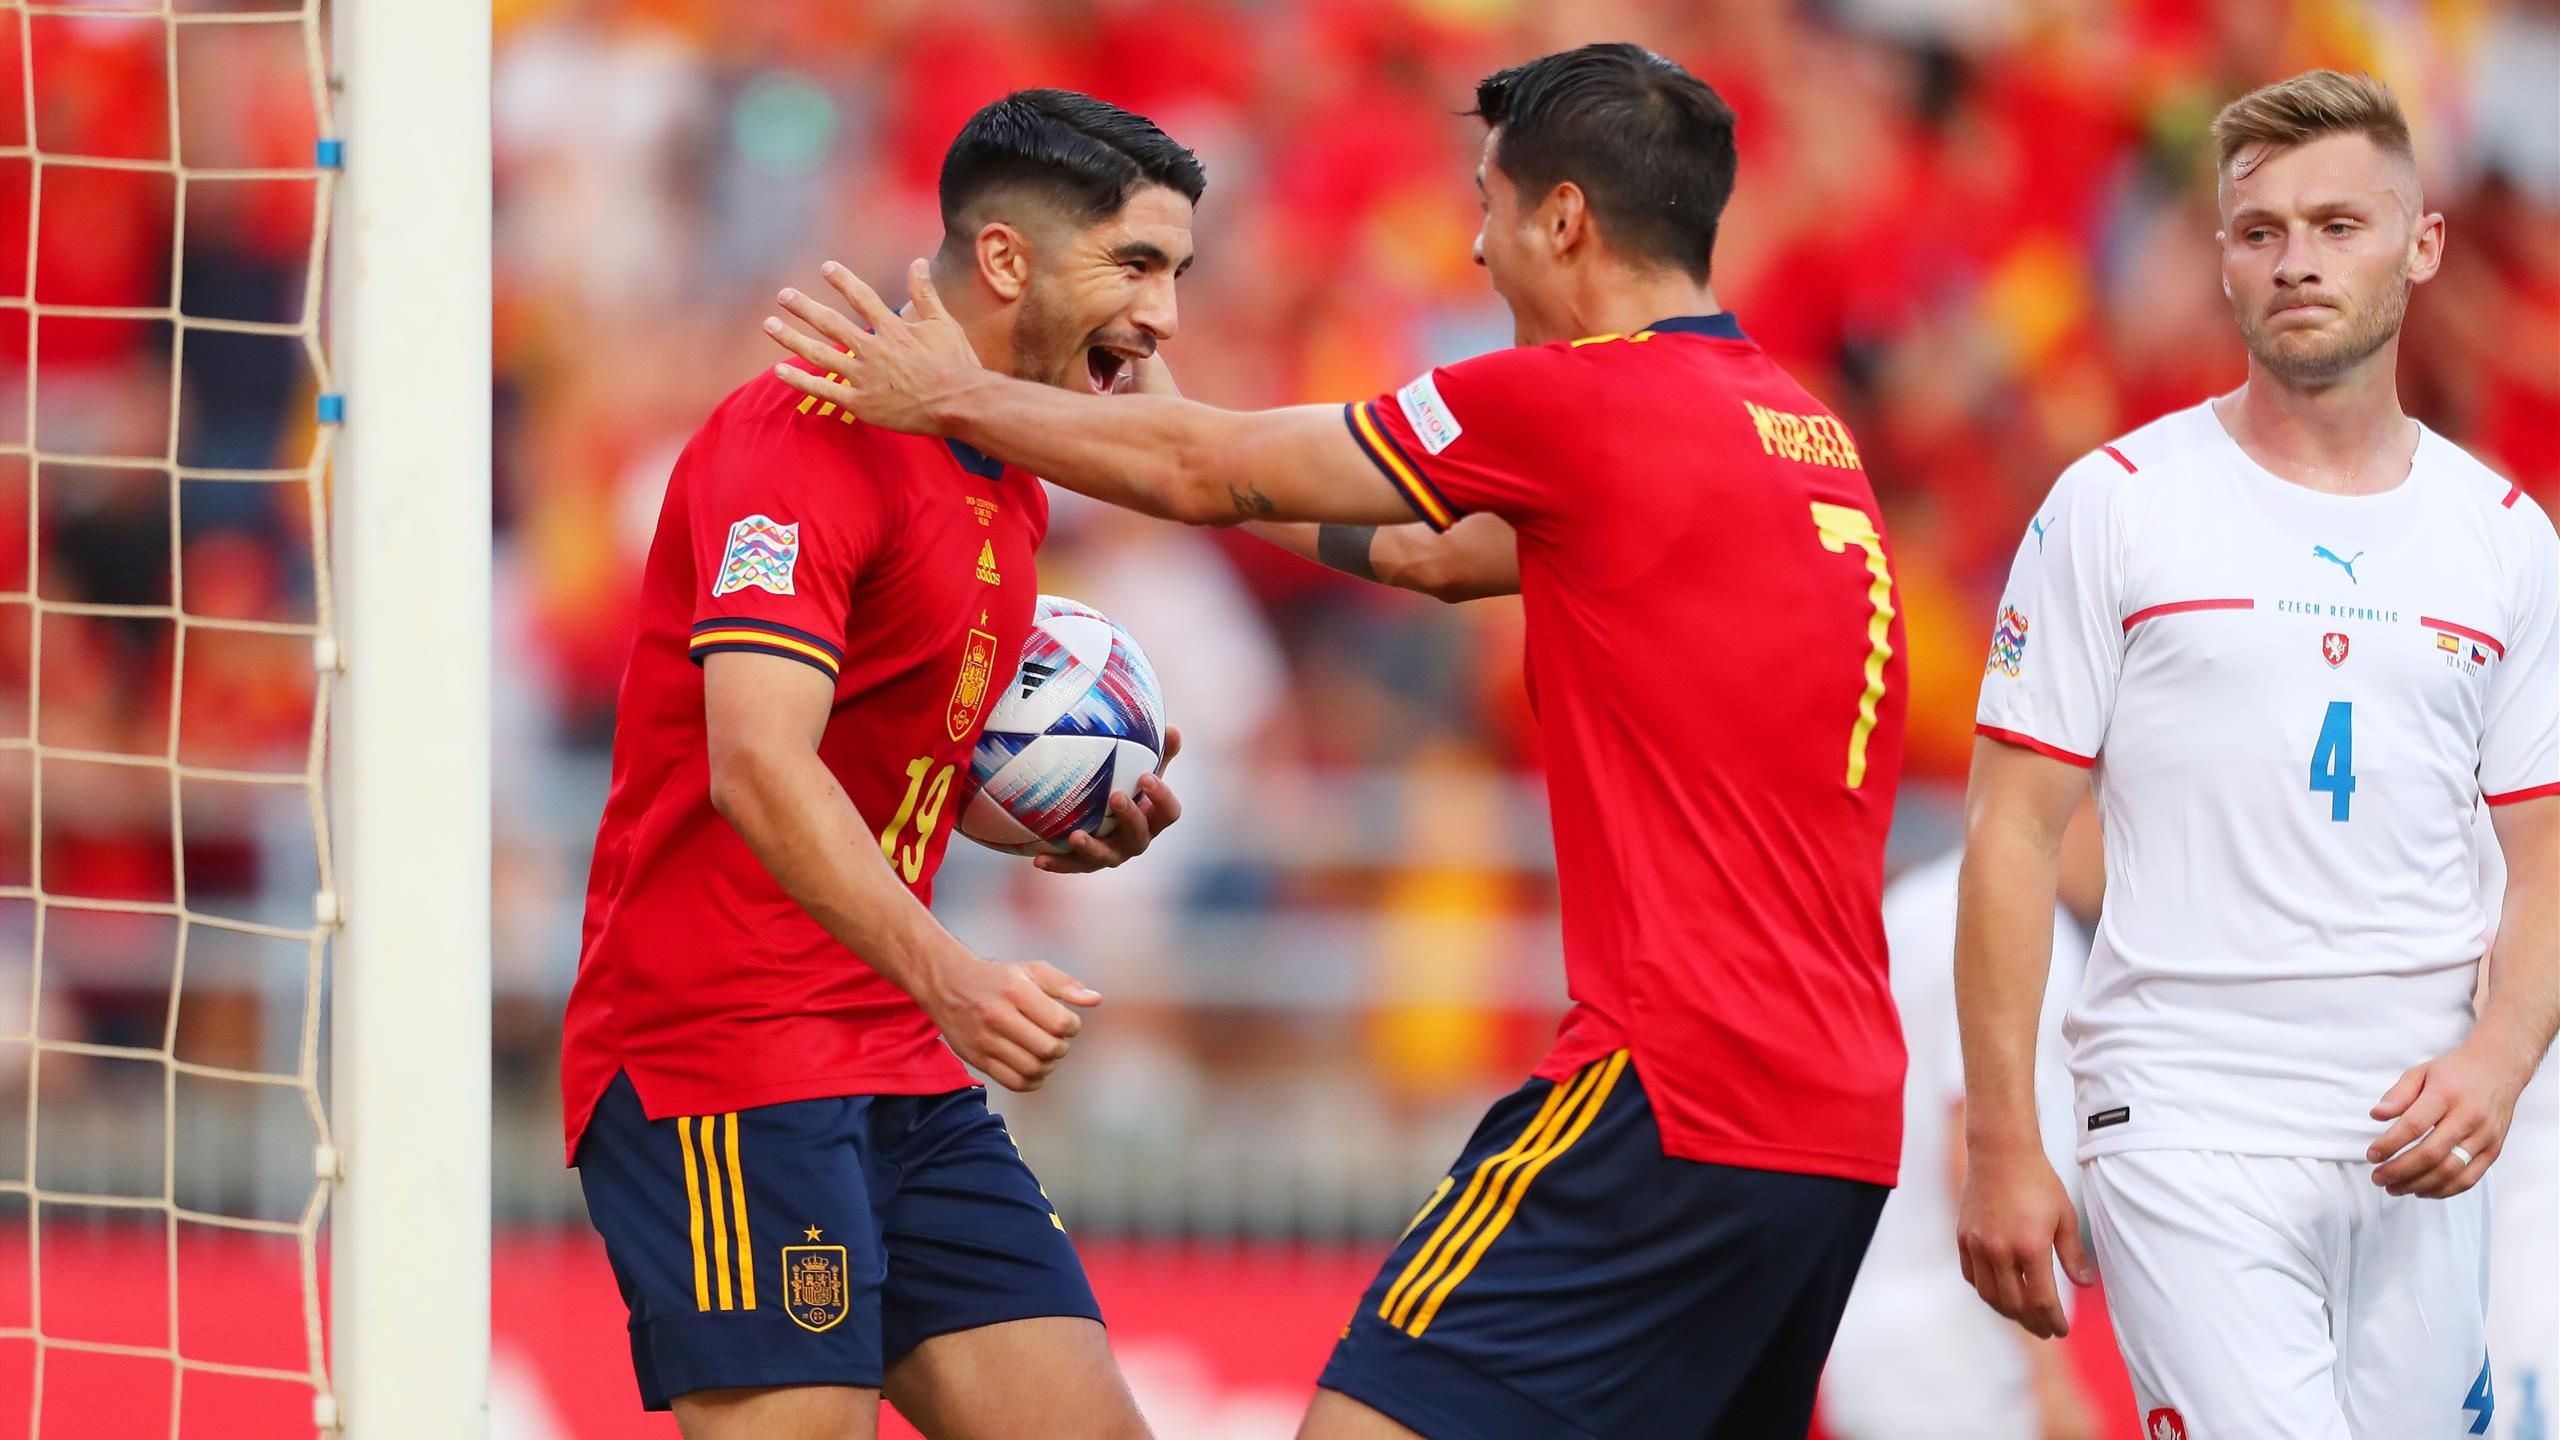 Nations League 2022 ¿Qué necesita España para estar en Final Four? Estas son sus cuentas ante Portugal - Eurosport